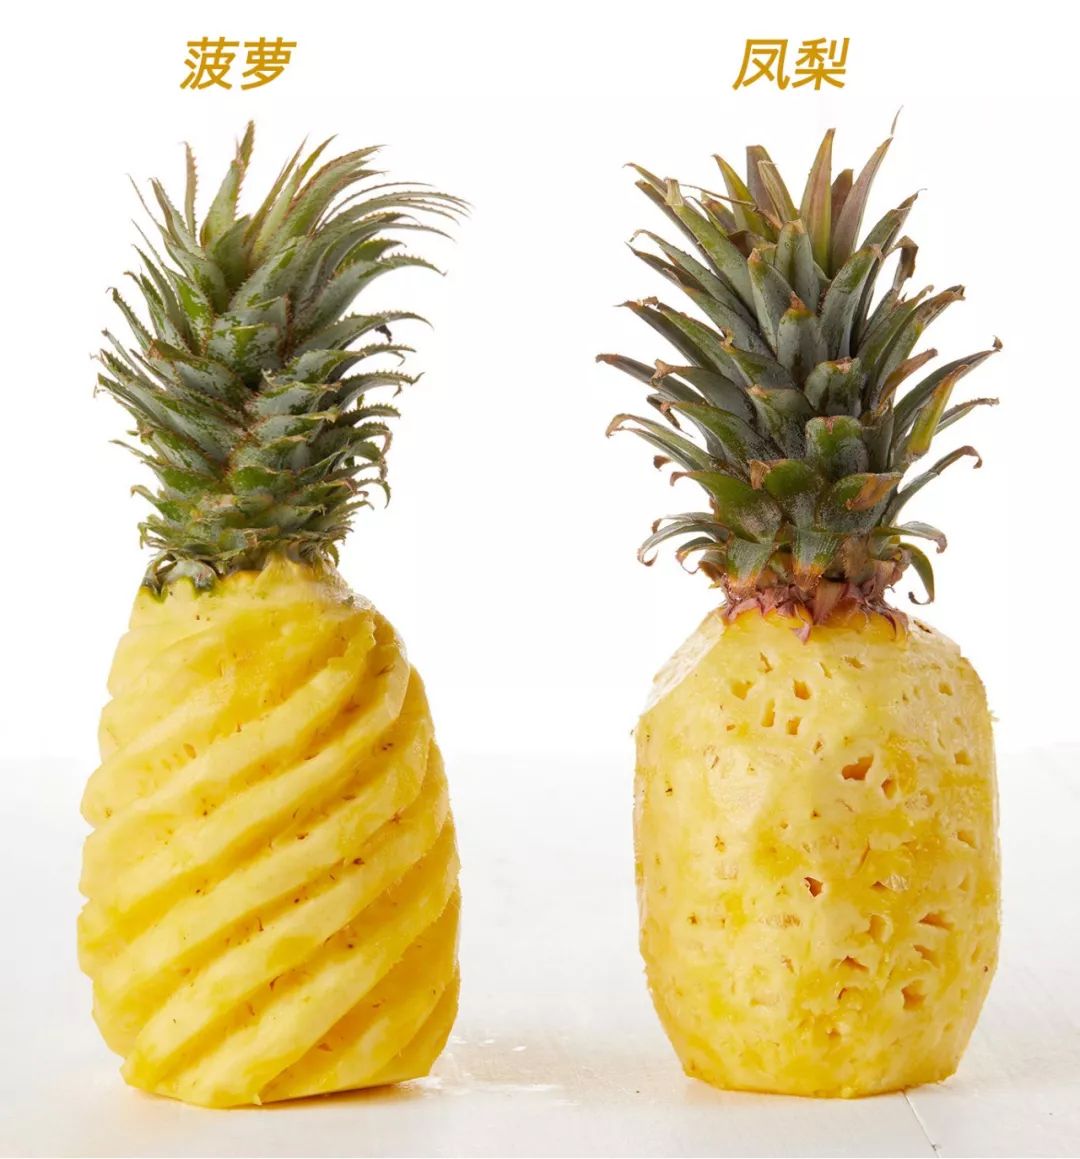 说起凤梨和菠萝的区别,很多人都是一头雾水,我们以这款金钻凤梨为例来